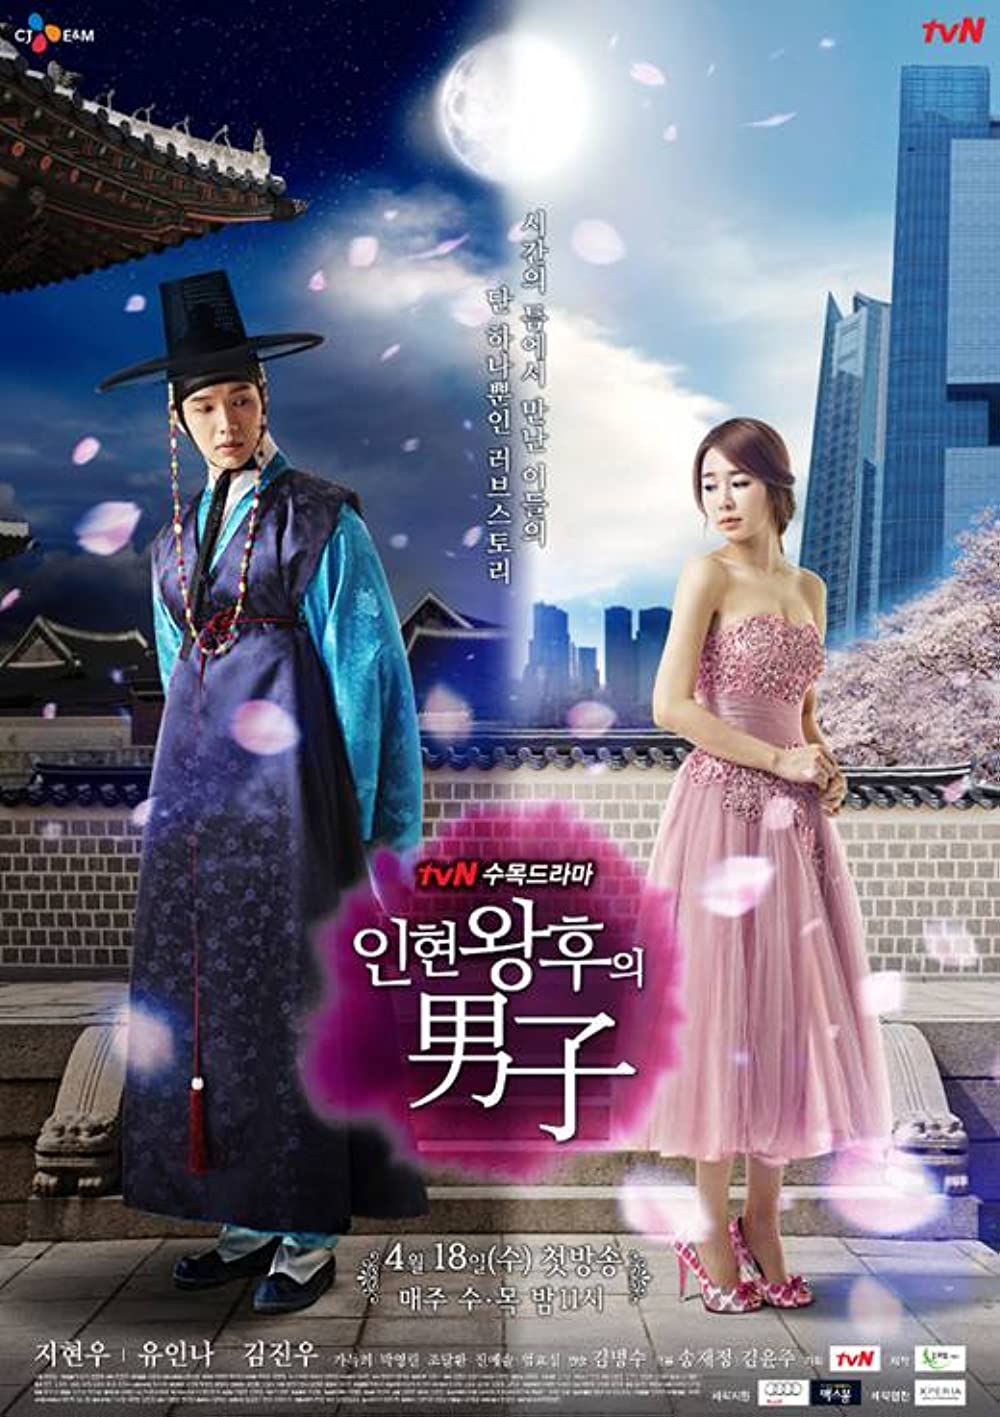 ดูหนังออนไลน์ฟรี Queen in hyun’s man (2012) EP.11 อินฮยอน มหัศจรรย์รักข้ามภพ ตอนที่ 11 (พากย์ไทย)